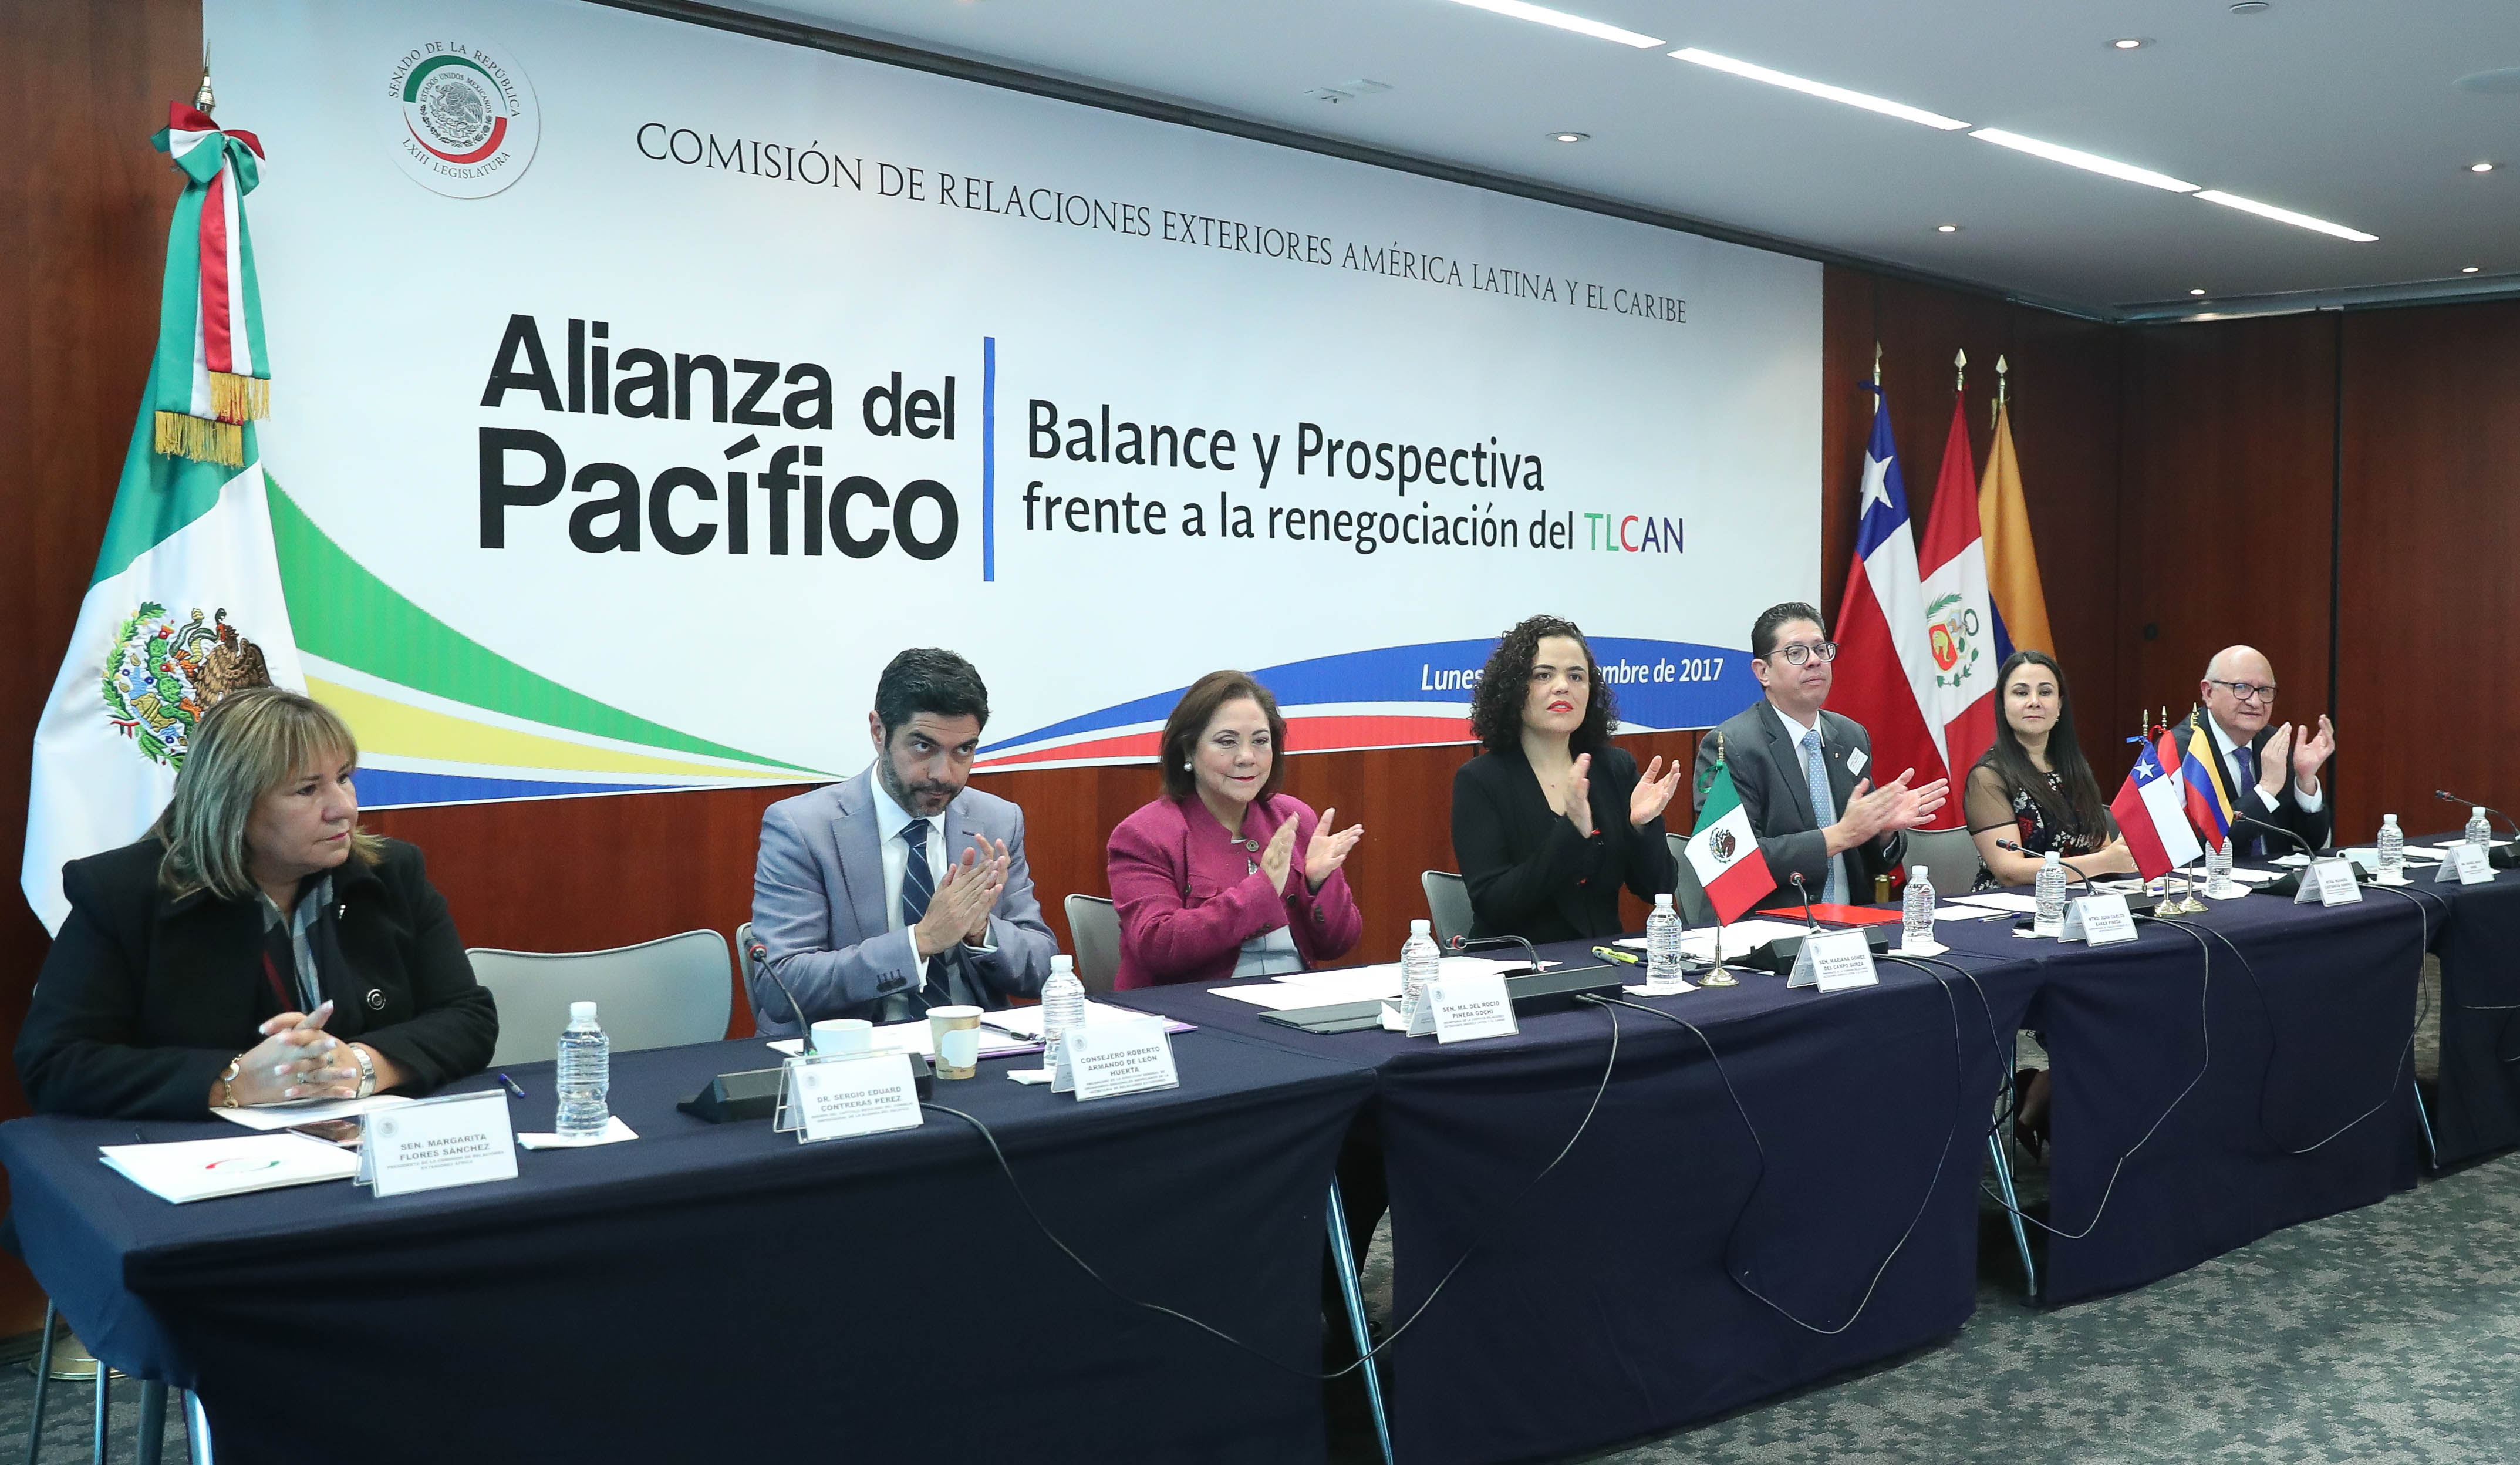  Alianza del Pacífico plataforma para diversificar el comercio ante complicaciones con el TLCAN